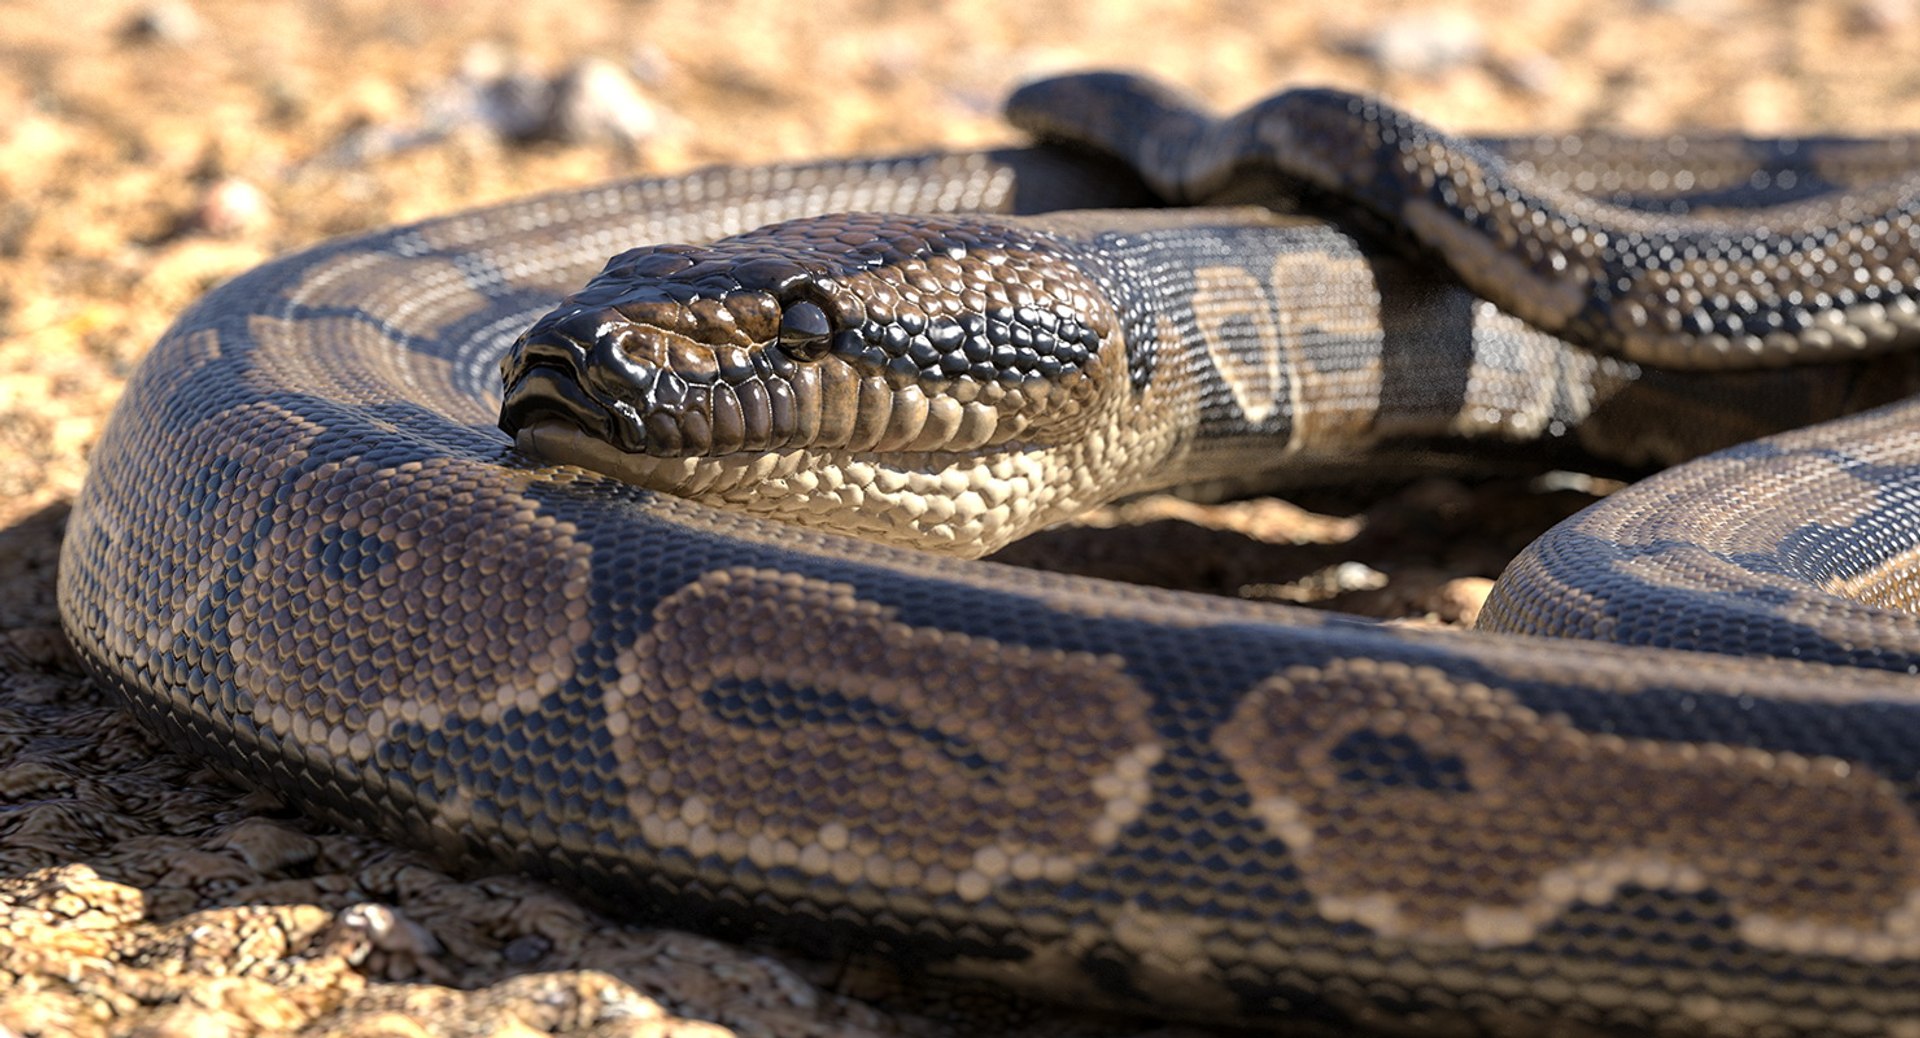 Python snake dark brown colour snake 3D model - TurboSquid 1958339